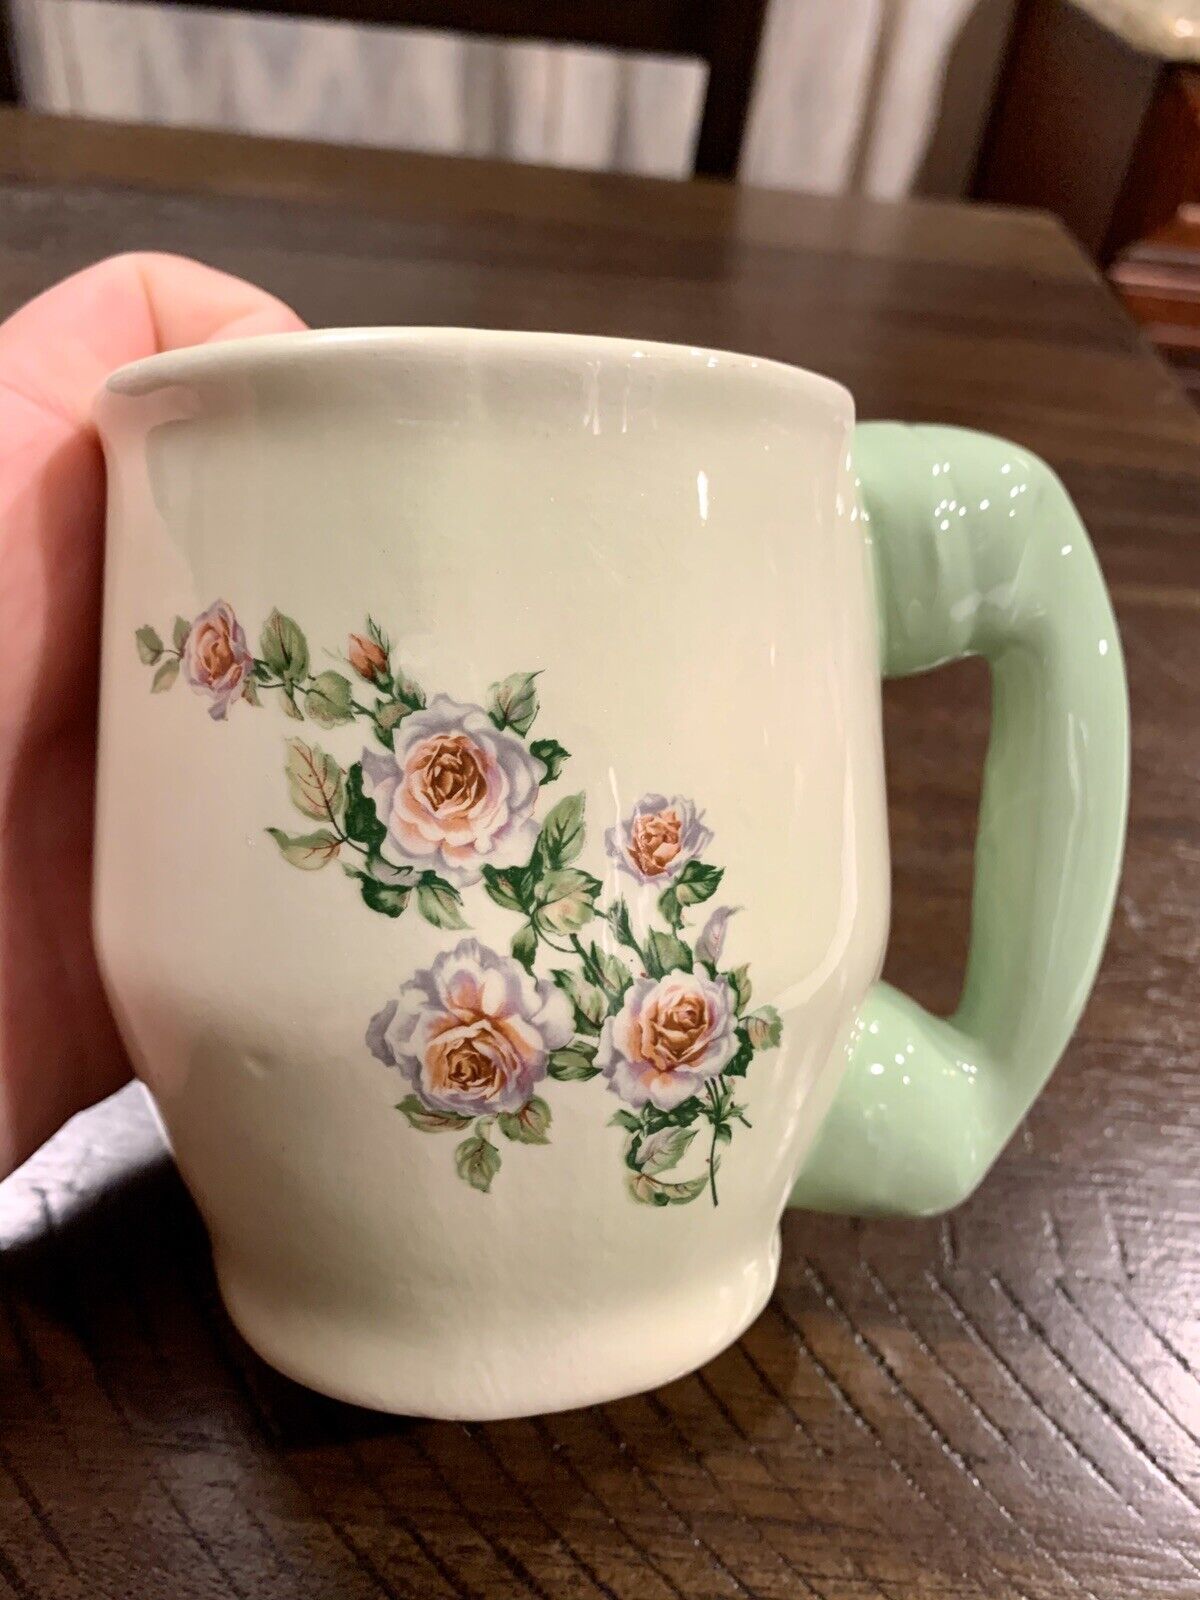 Vintage Classy Ceramic Mug With Floral Design